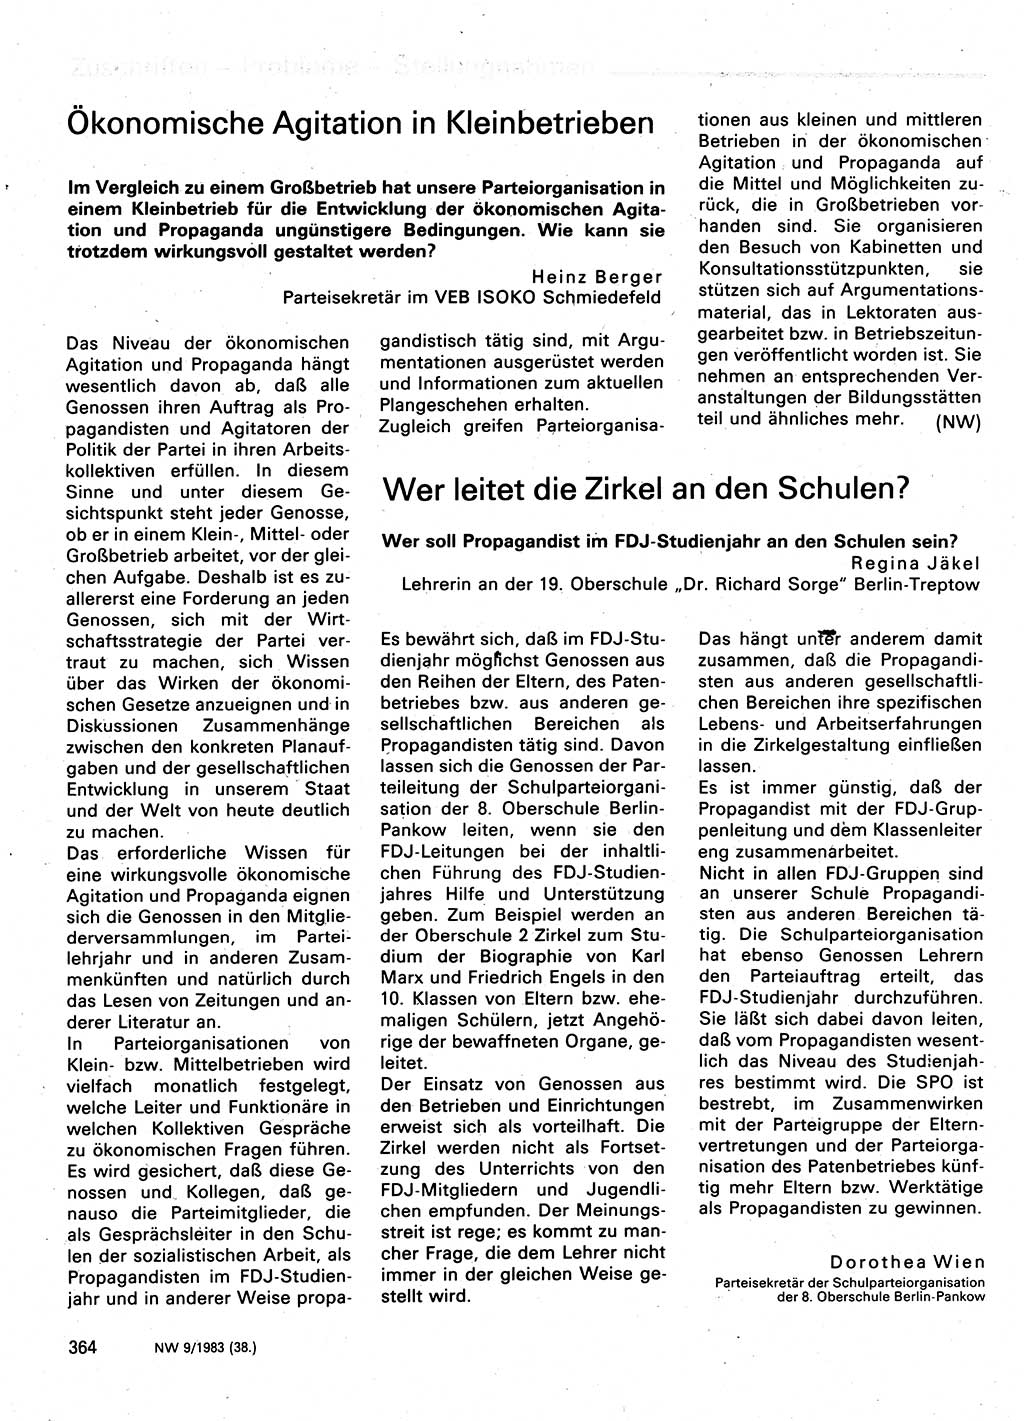 Neuer Weg (NW), Organ des Zentralkomitees (ZK) der SED (Sozialistische Einheitspartei Deutschlands) für Fragen des Parteilebens, 38. Jahrgang [Deutsche Demokratische Republik (DDR)] 1983, Seite 364 (NW ZK SED DDR 1983, S. 364)